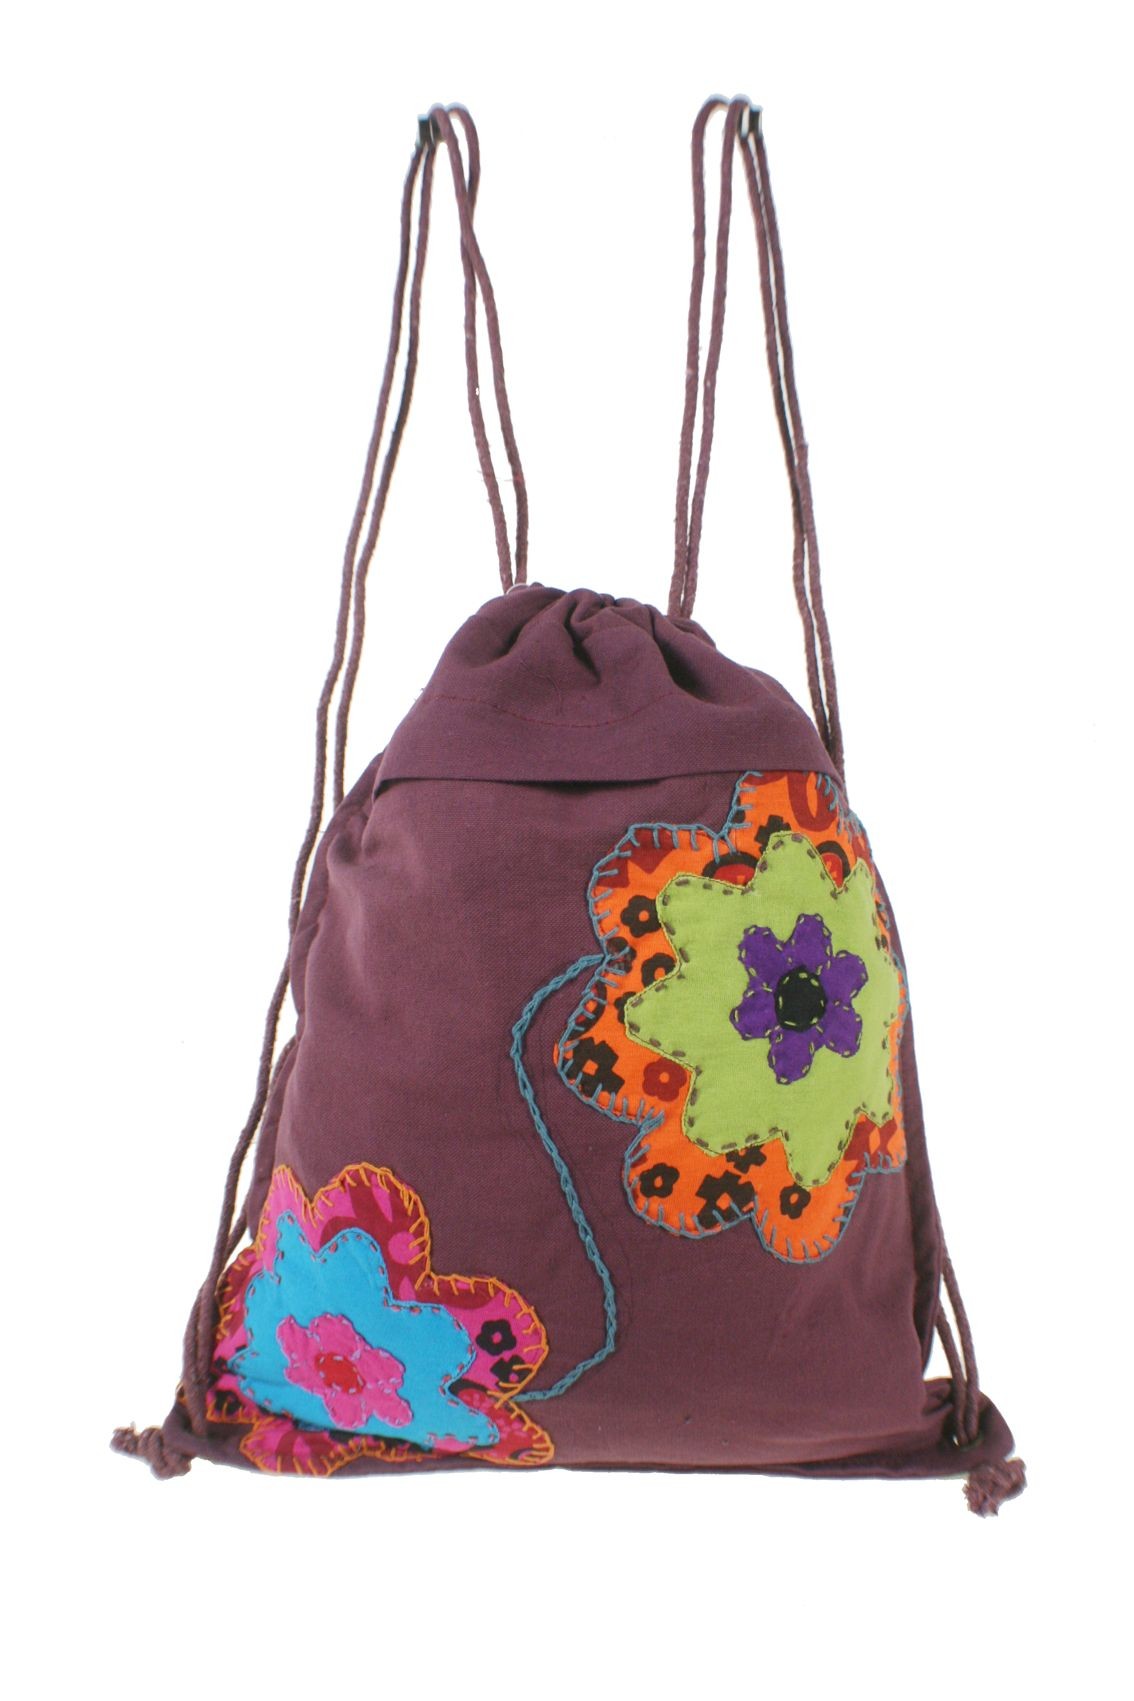 servidor propiedad Federal Mochila bolsa de cuerdas hippie bordado étnico color granate